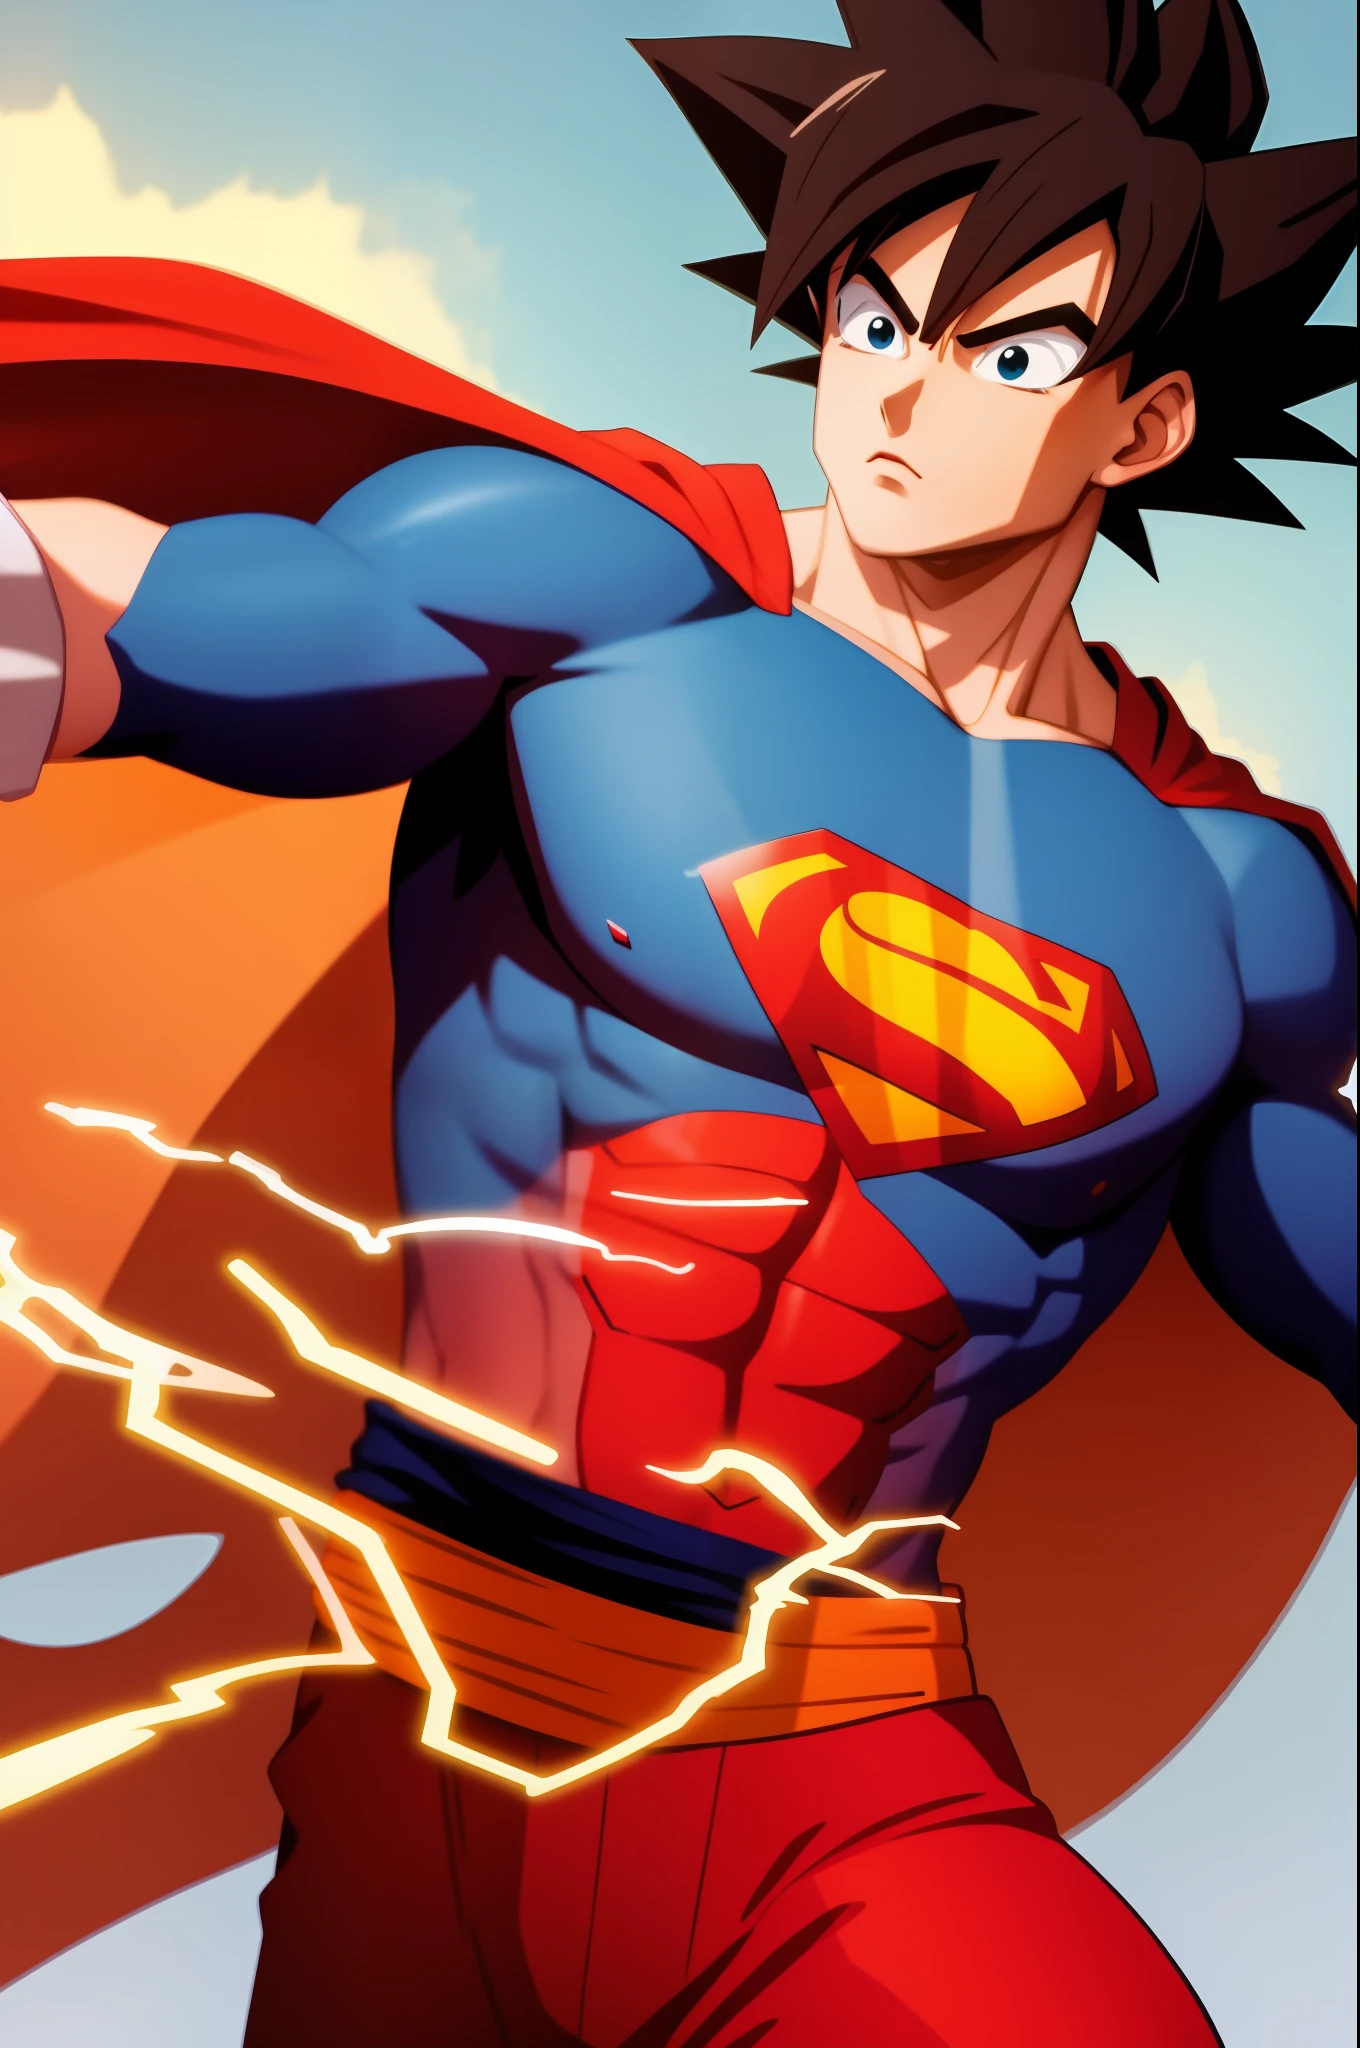 Merge Goku with Superman